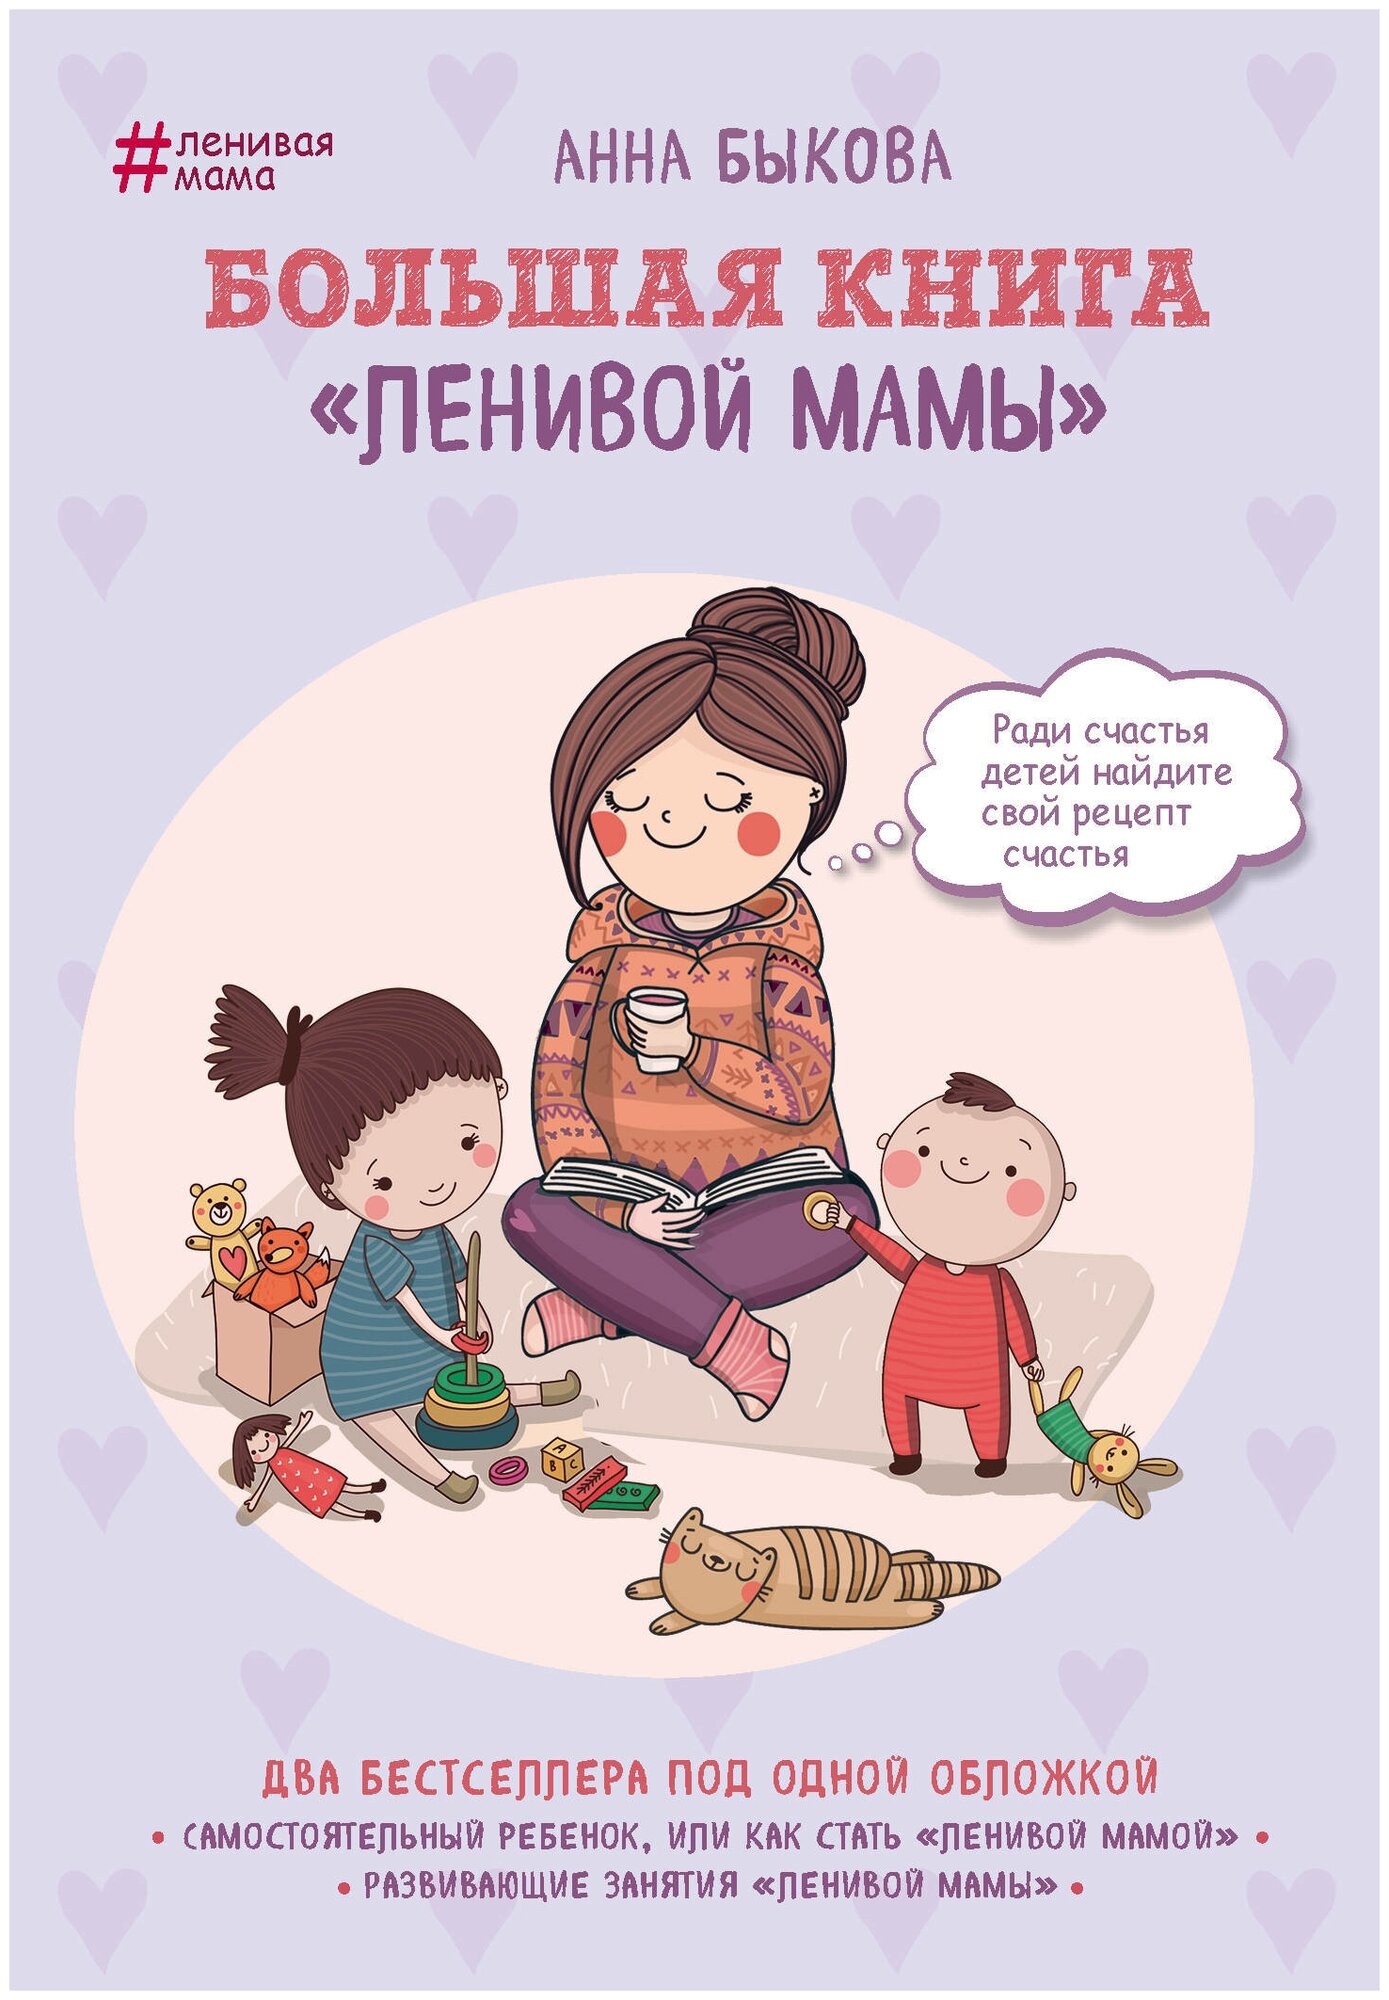 Большая книга "ленивой мамы" - фото №13